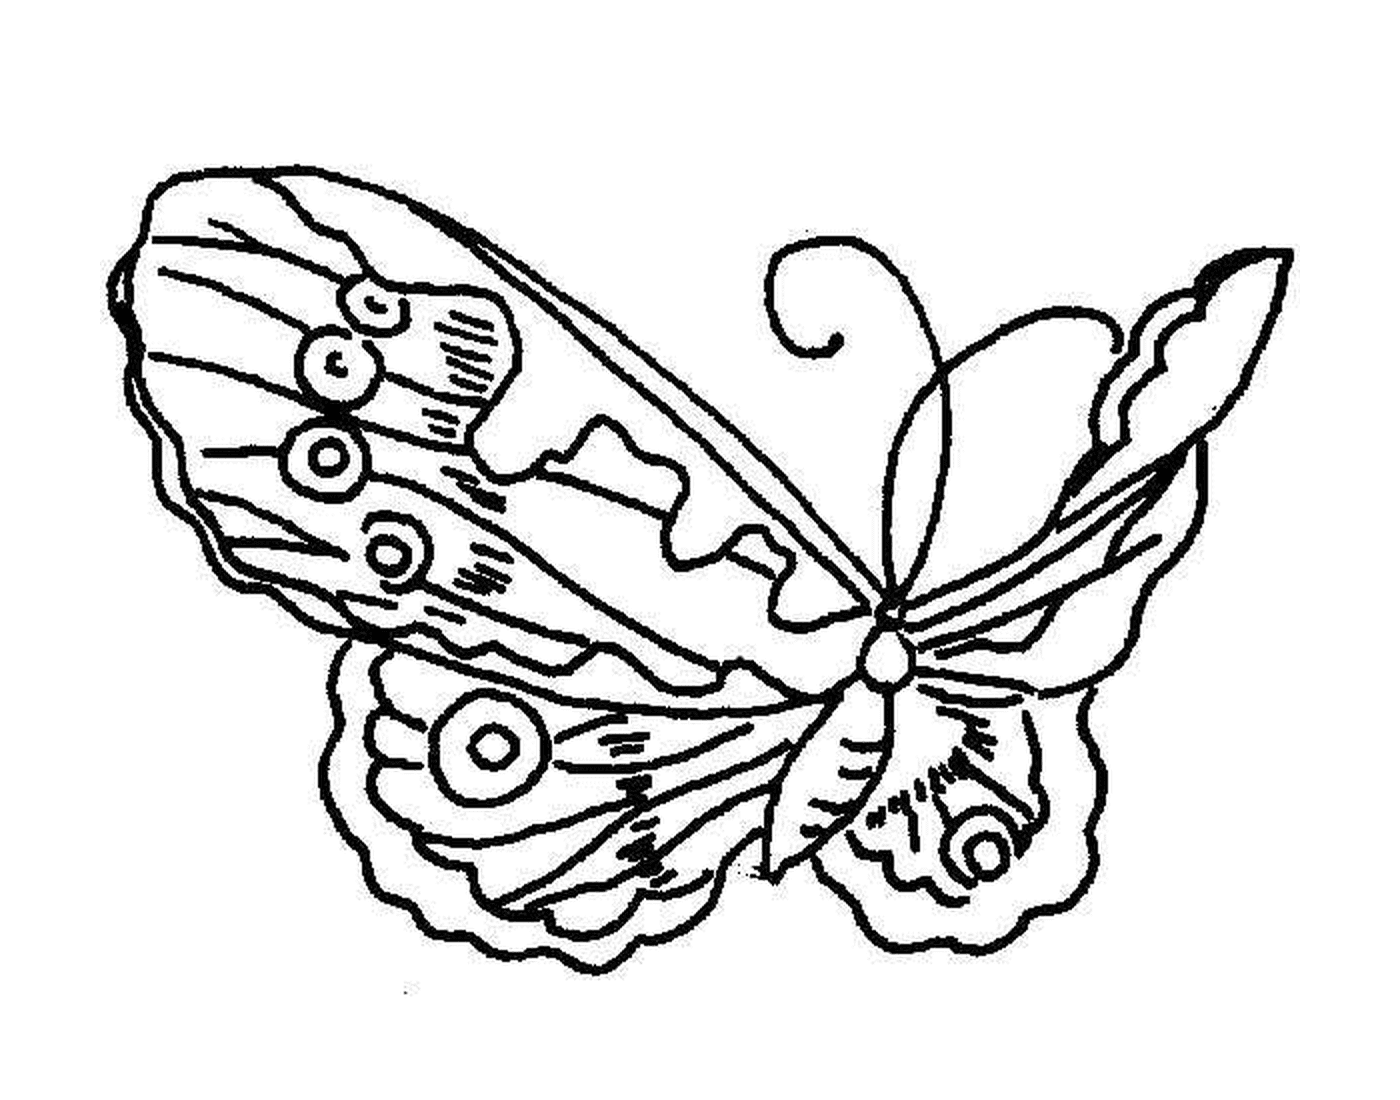  सुन्दर और पतली तितली 